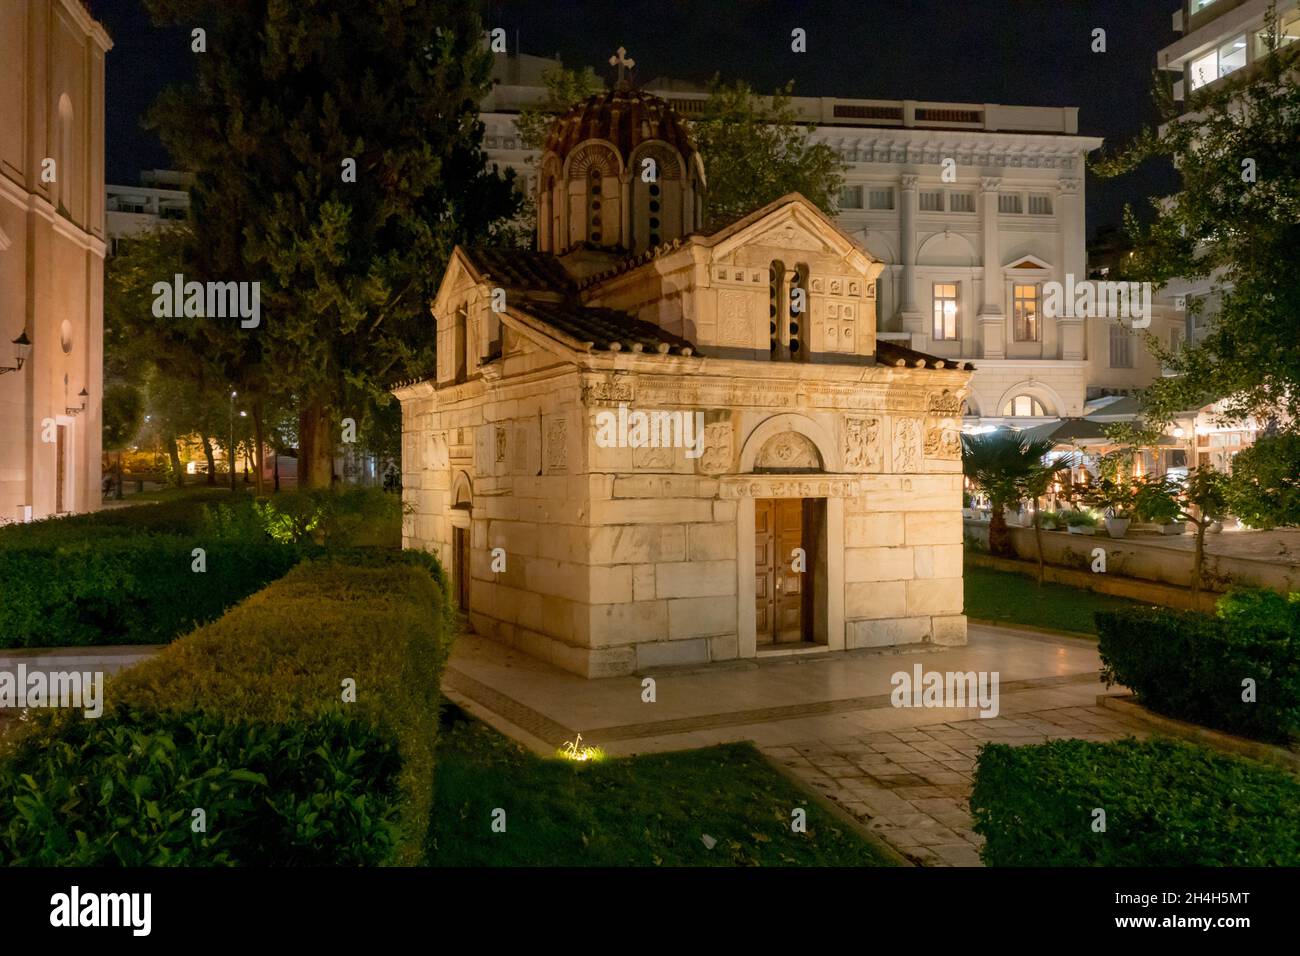 Chiesa di Panagia Kapnikarea ad Atene. Foto panoramica di uno dei più antichi edifici religiosi della Grecia durante la notte. Foto Stock